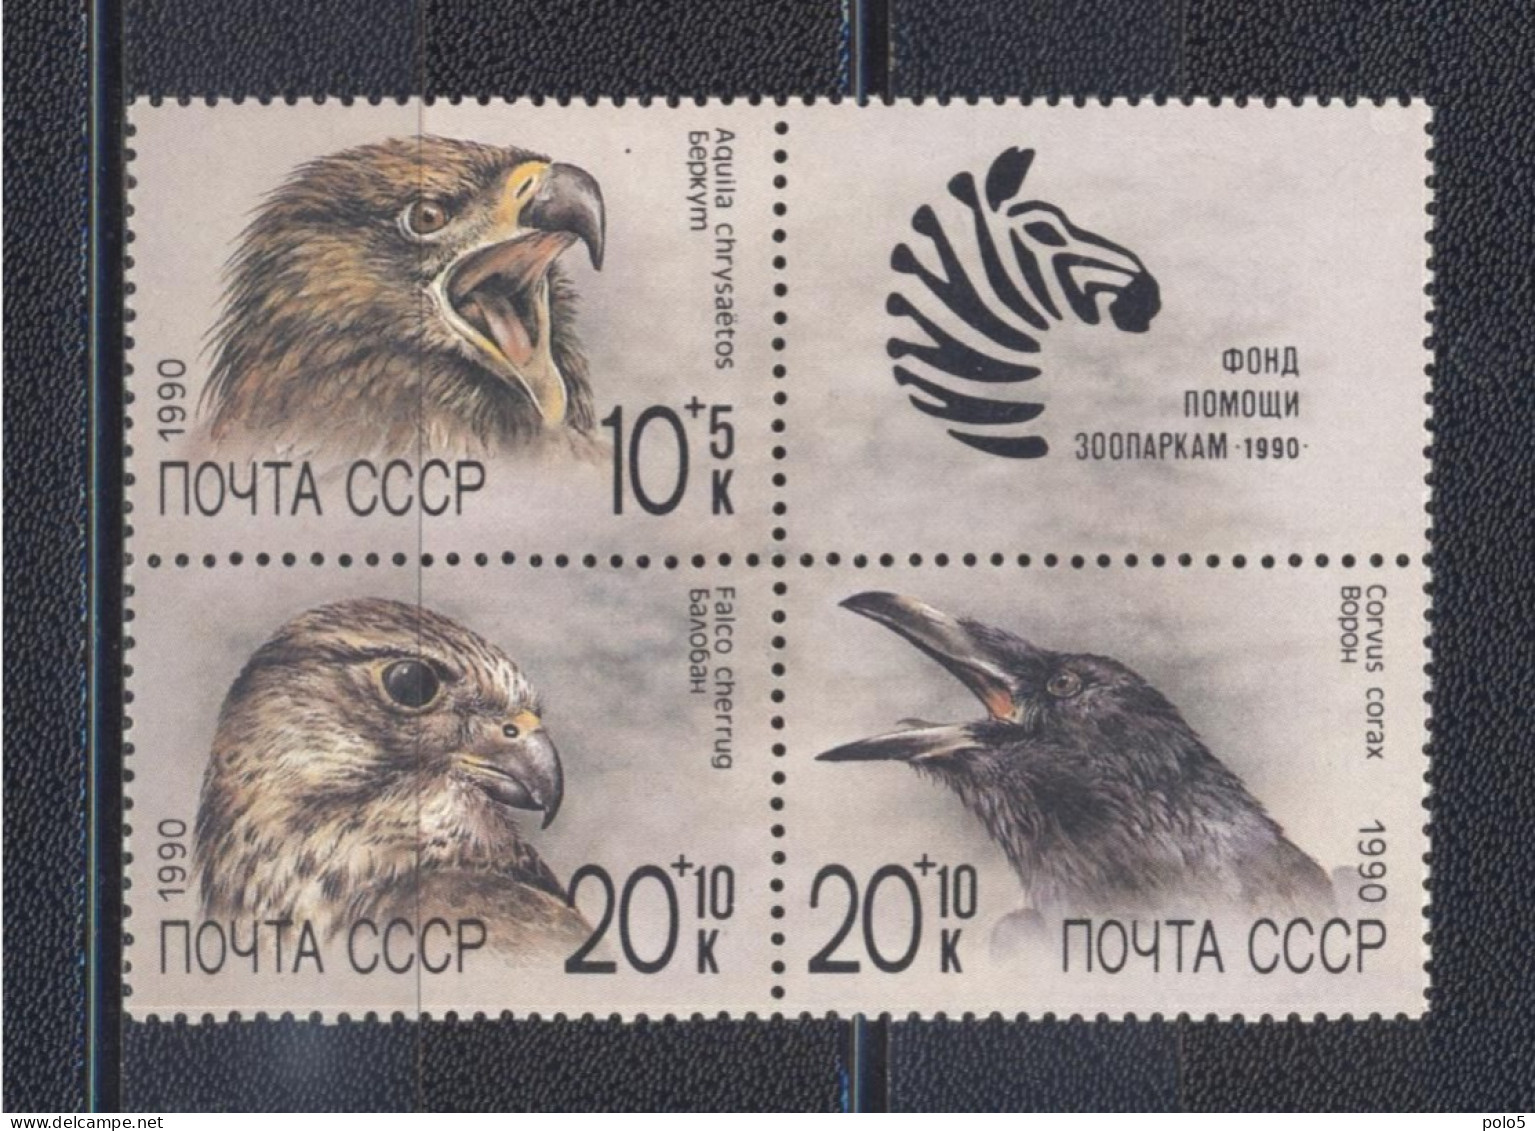 URSS 1990-Birds-Zoo Relief Fund Block Of 3+ 1 Label - Unused Stamps